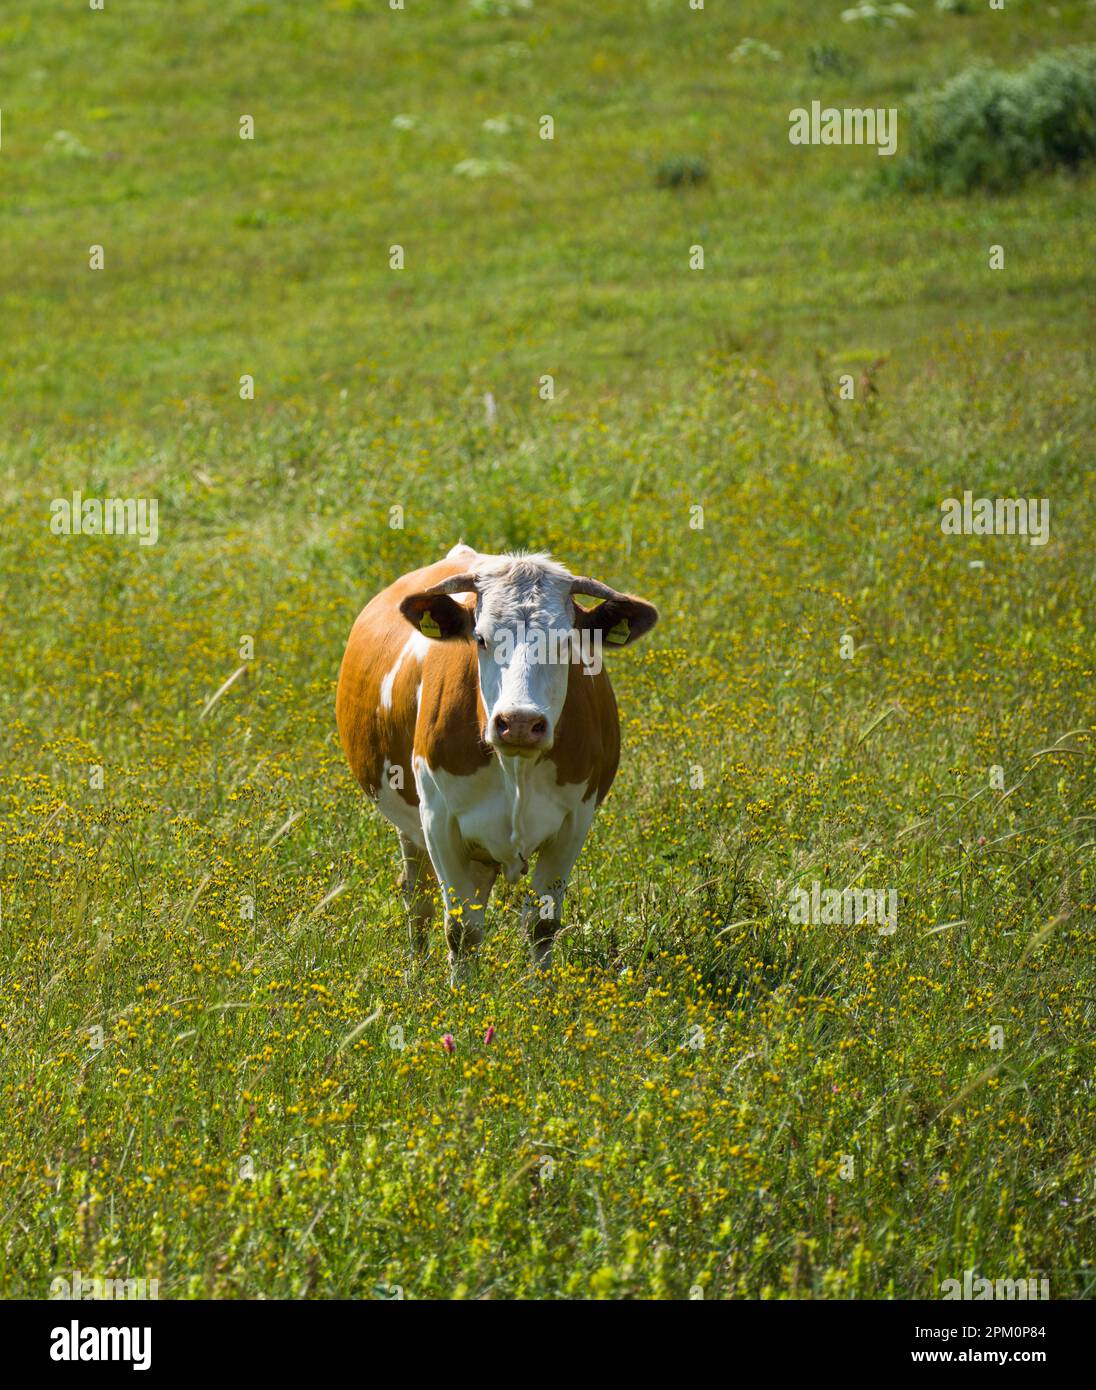 La grosse vache sur l'herbe. Vache Simmental qui broutage dans le champ de fleurs Banque D'Images